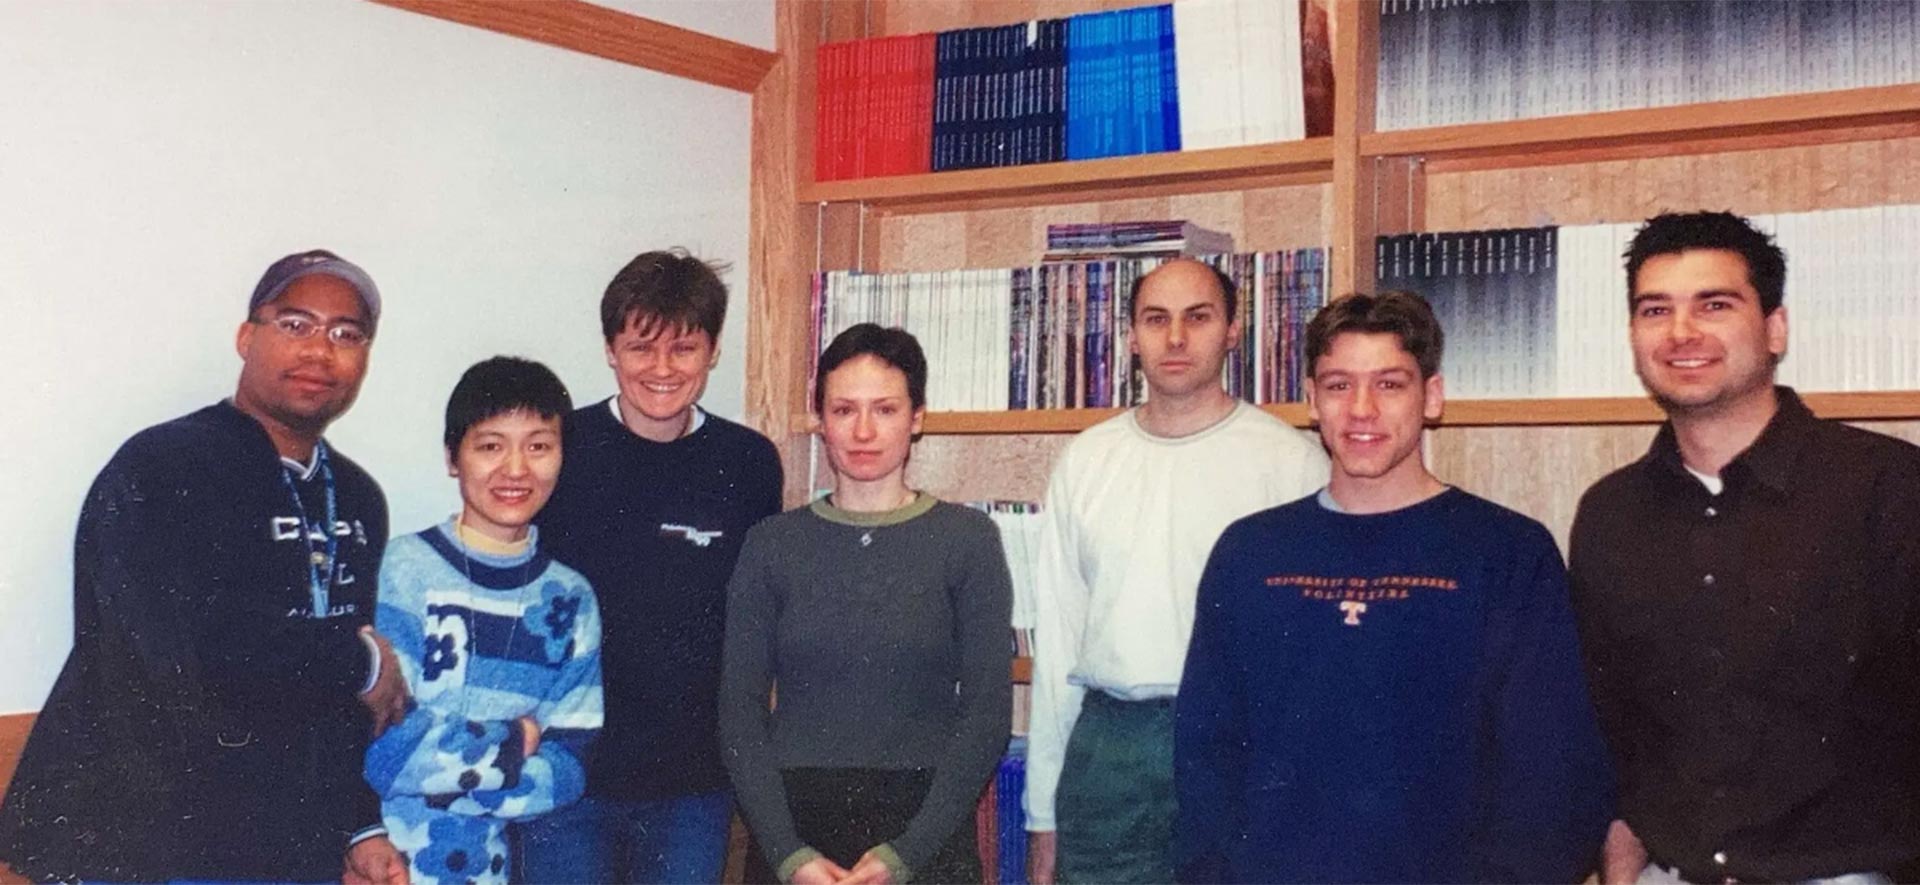 La Dra. Drew Weissman, tercera por la derecha, y la Dra. Katalin Karikó, tercera por la izquierda, en 2001.